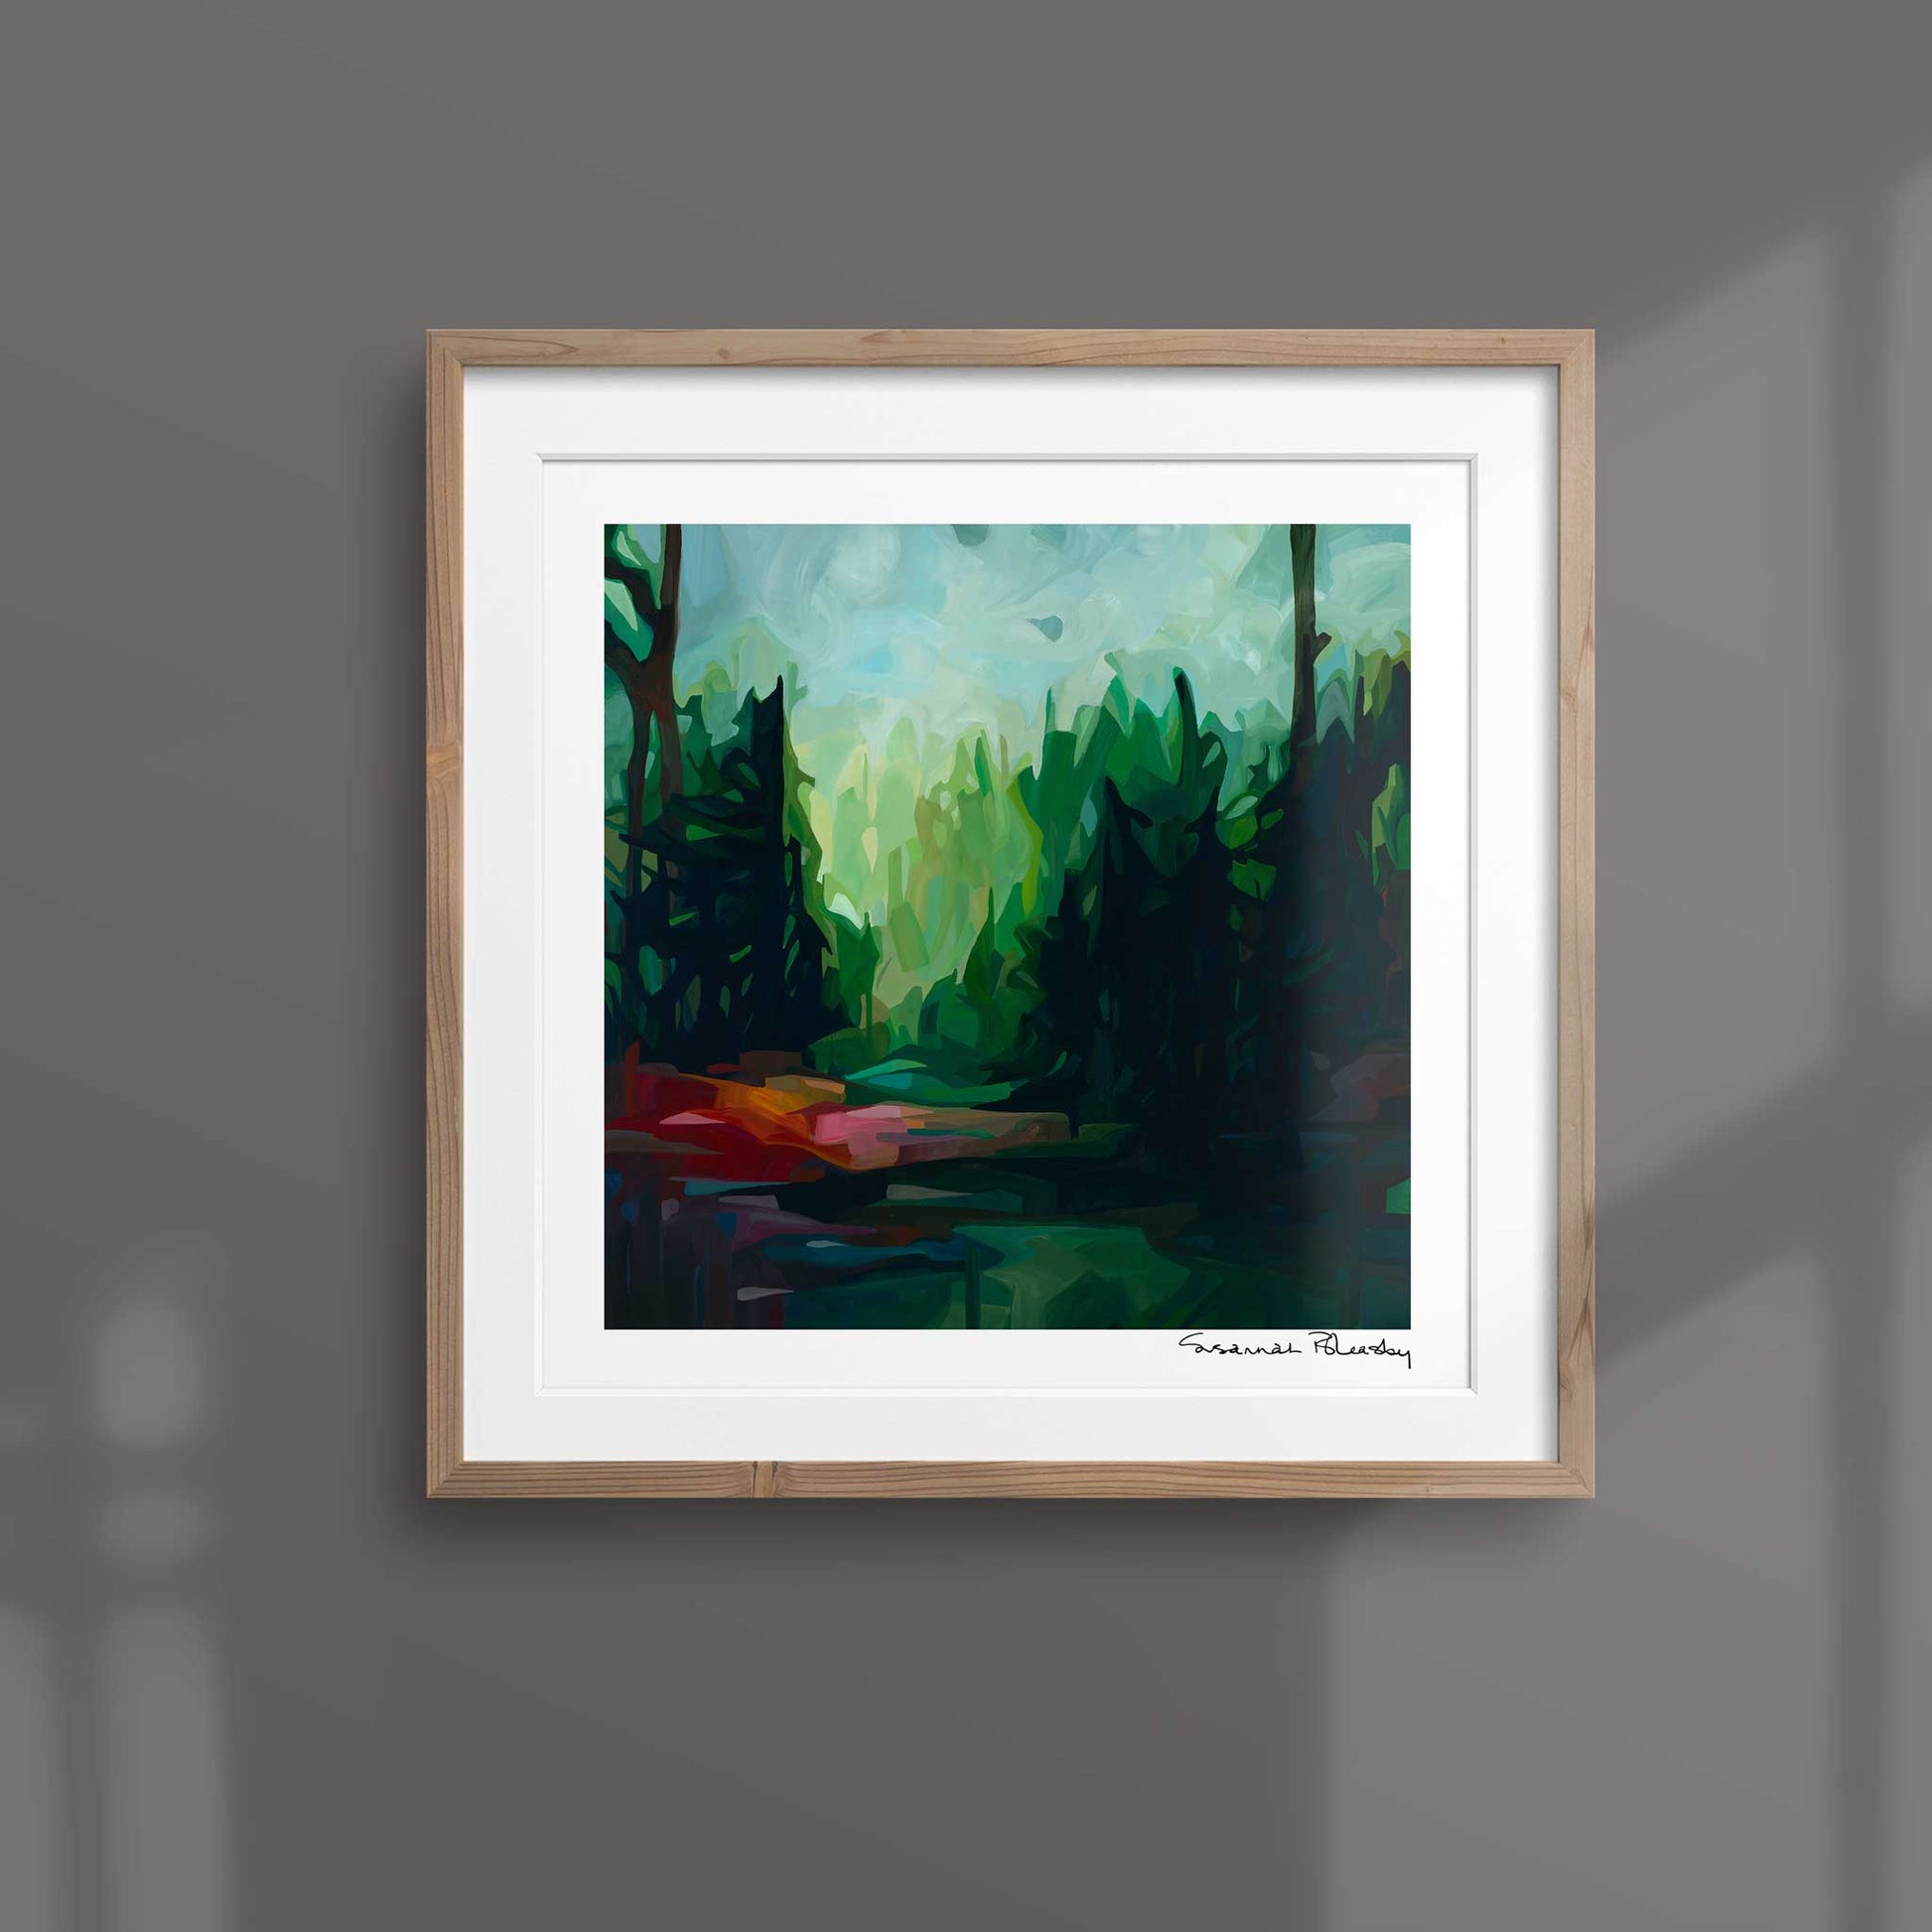 framed emerald green abstract art print of an abstract forest painting by Canadian abstract artist Susannah Bleasby